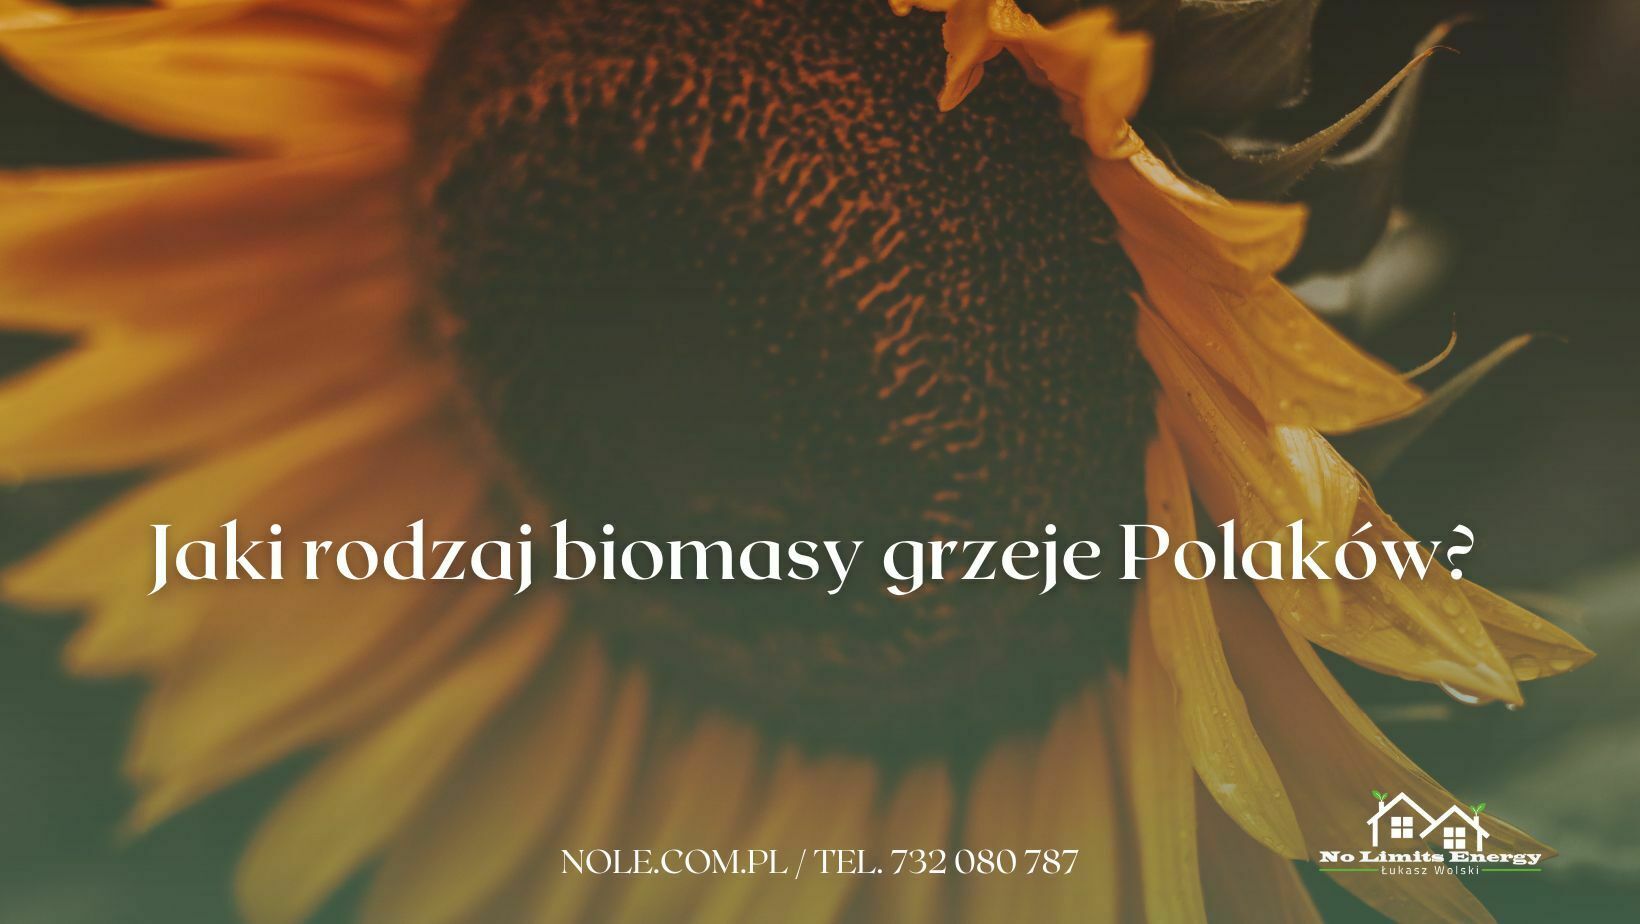 Jaki rodzaj biomasy grzeje Polaków? pellet z biomasy